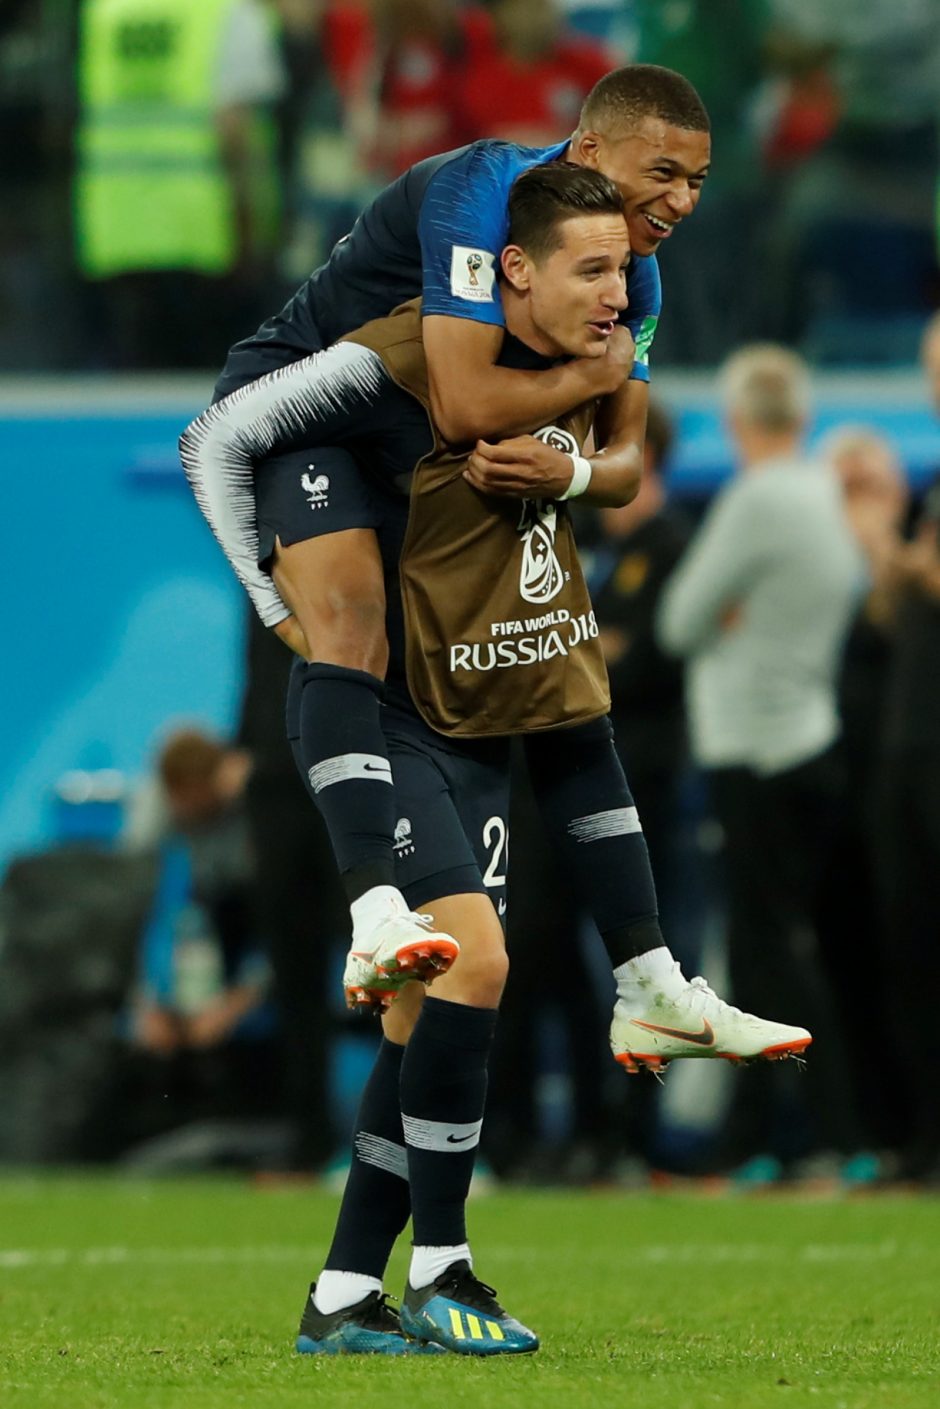 Prancūzijos futbolininkai žengė į pasaulio čempionato finalą